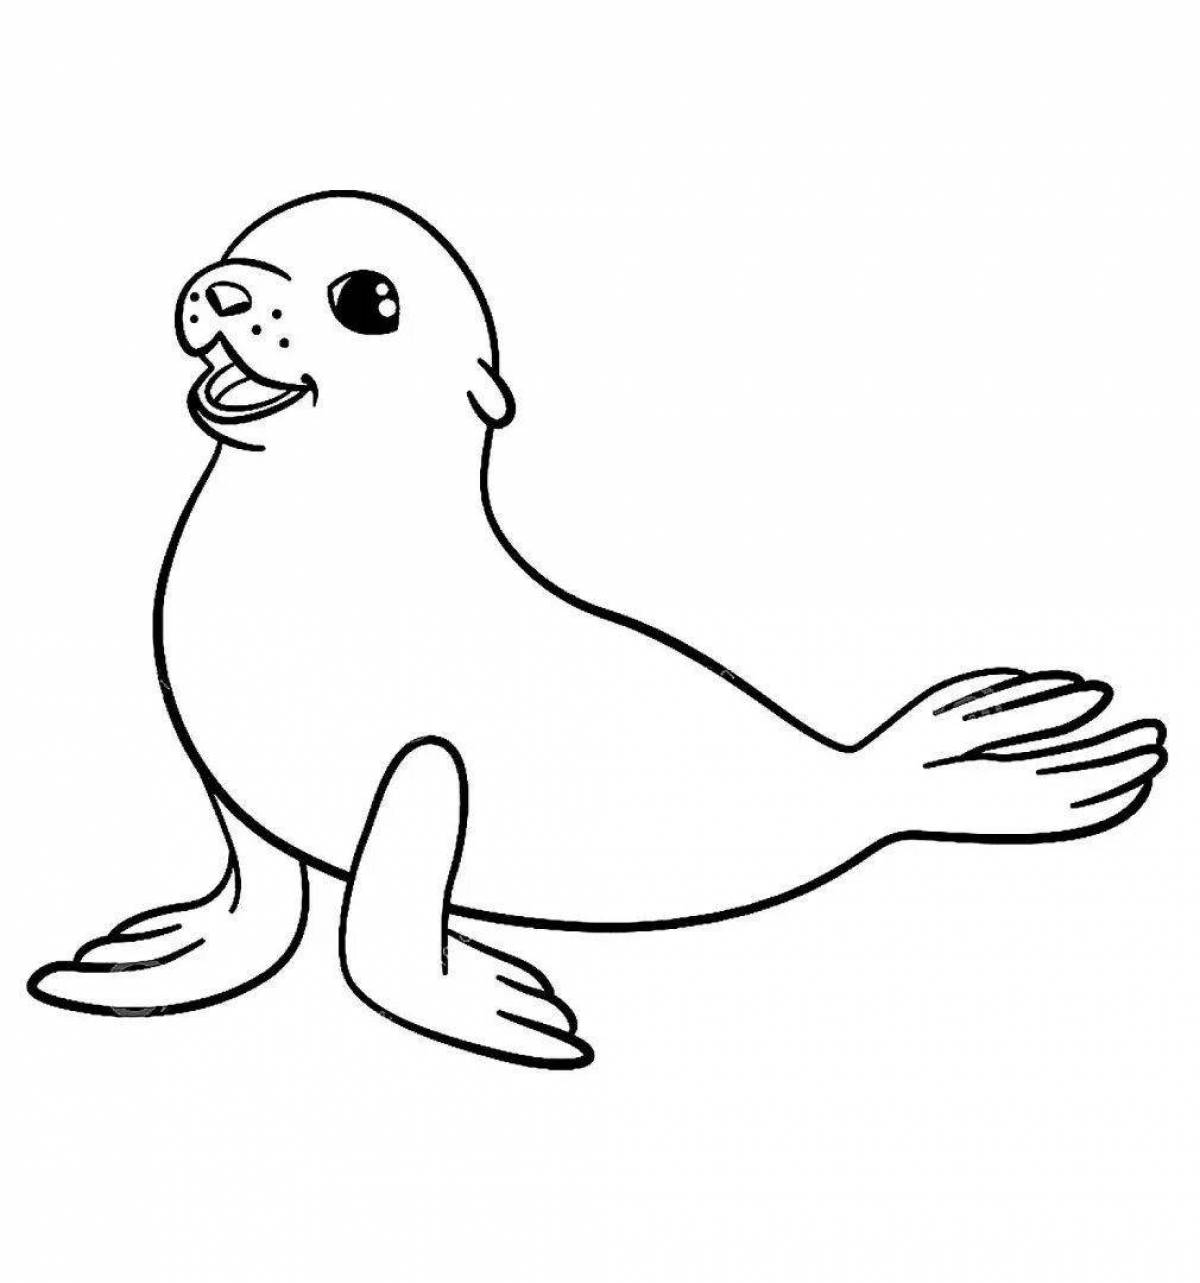 Joyful Baikal seal coloring book for kids